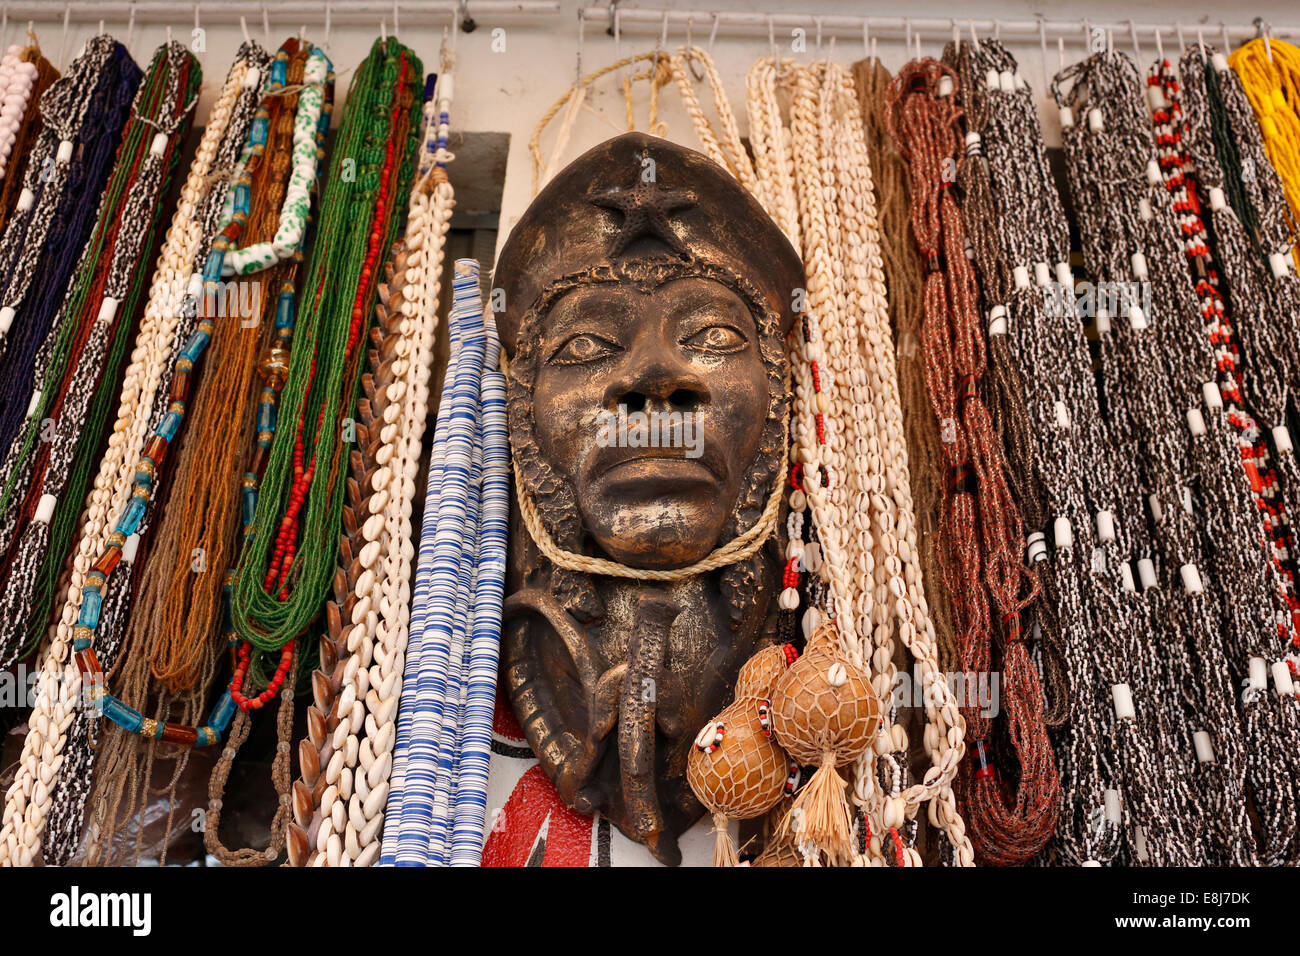 CandomblŽ (Afro-Brazilian religion) shop at Sao Joaquim market Stock Photo